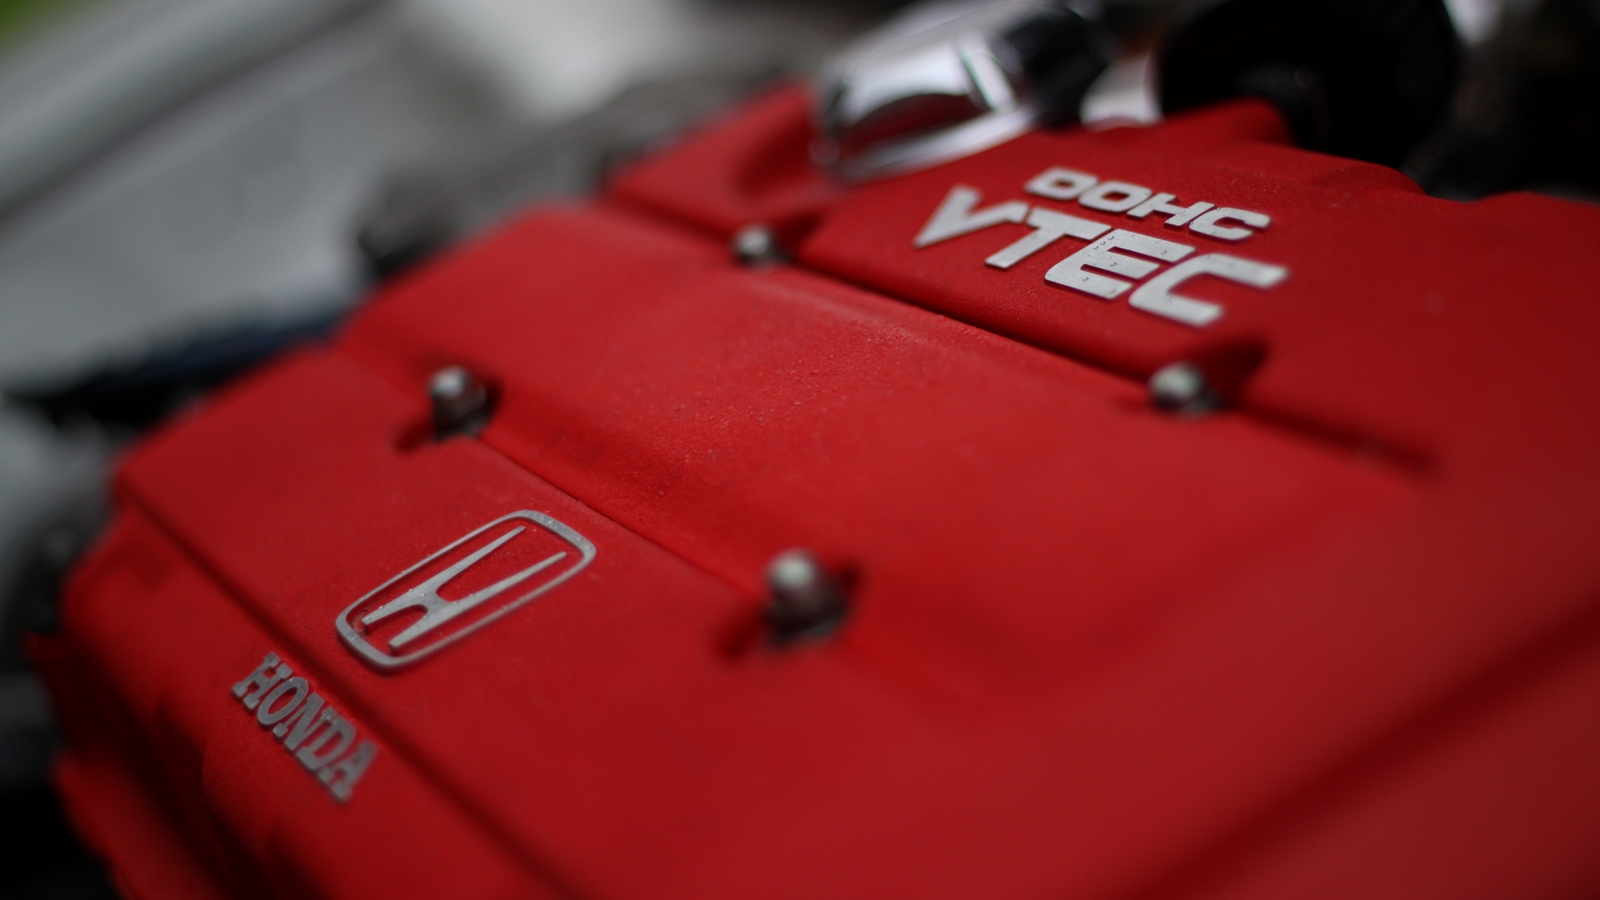 VTEC và i-VTEC là các công nghệ mà Honda áp dụng cho động cơ nhằm tăng cao hiệu suất vận hành, tối ưu mức nhiên liệu và lượng khí thải.